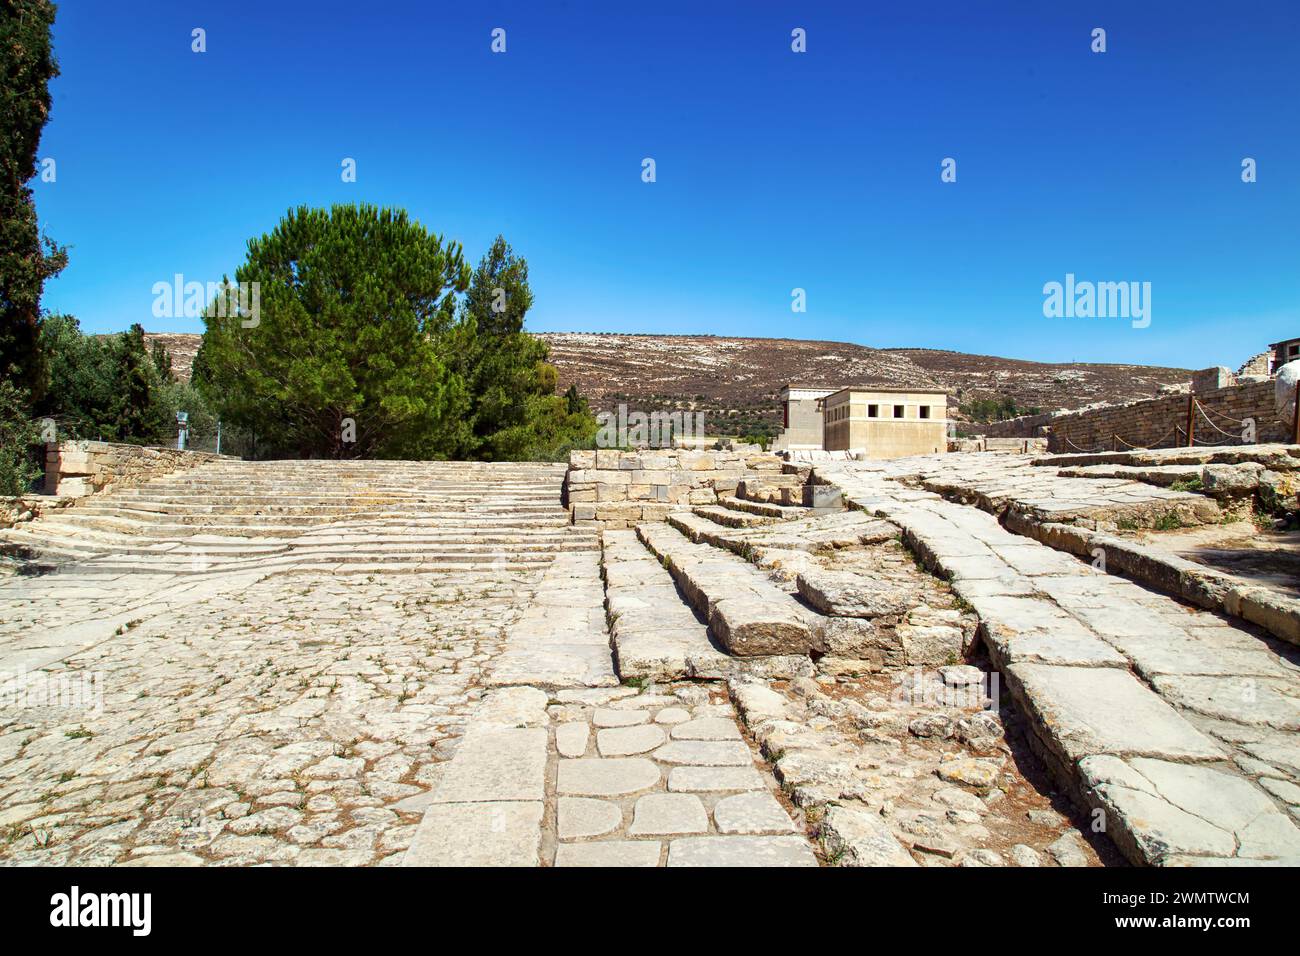 Le site archéologique de Knossus sur l’île de Crète (Grèce) Banque D'Images